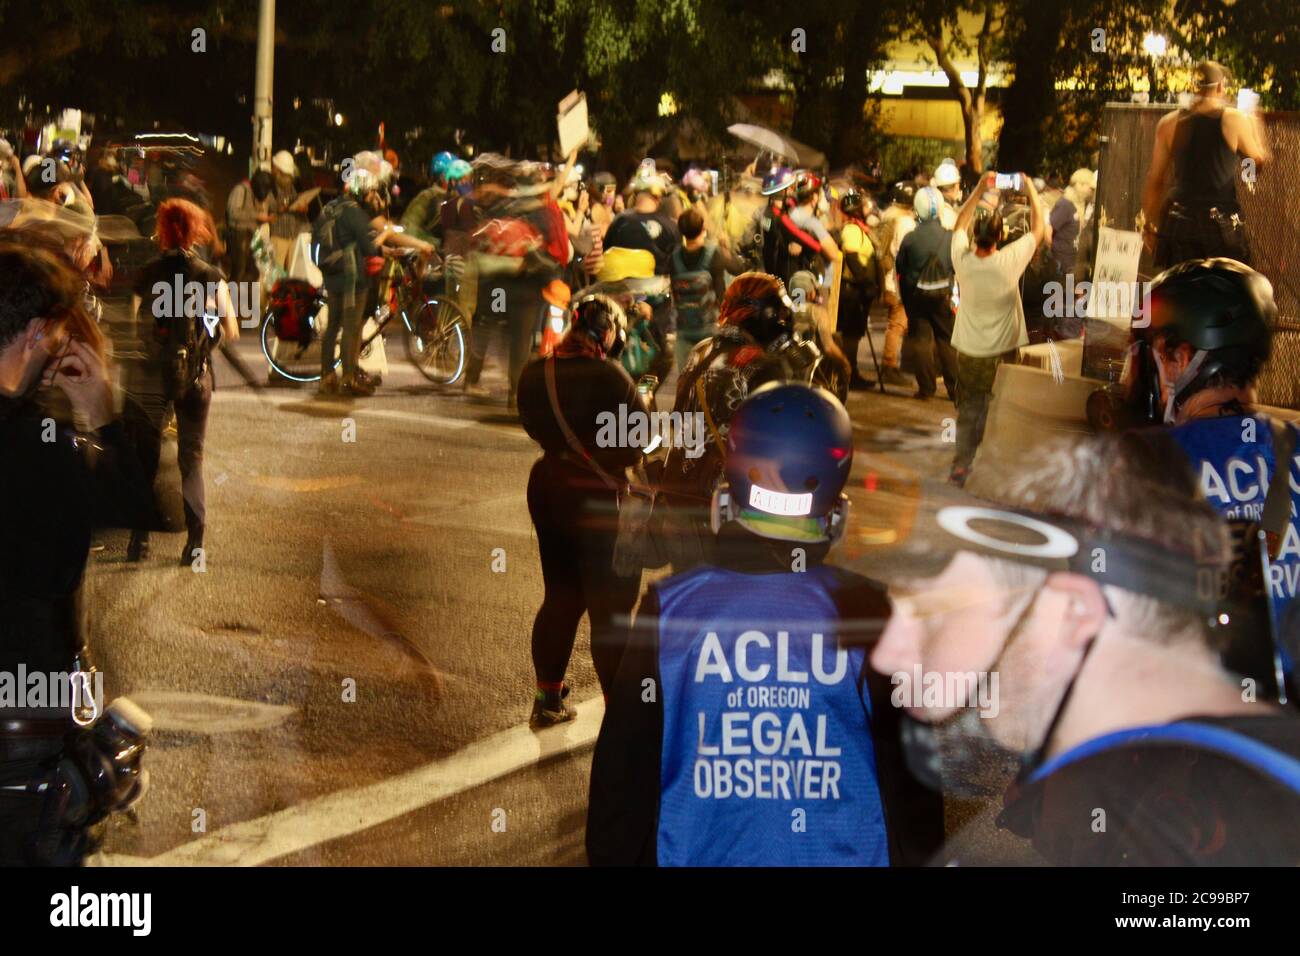 Portland, Oregon, USA. Juli 2020. ACLU Rechtliche Beobachter bei den Protesten in Portland. Jede Nacht wurden sie von Bundesagenten zusammen mit den anderen Protestierenden mit Tränengastern vergast. Quelle: Amy Katz/ZUMA Wire/Alamy Live News Stockfoto